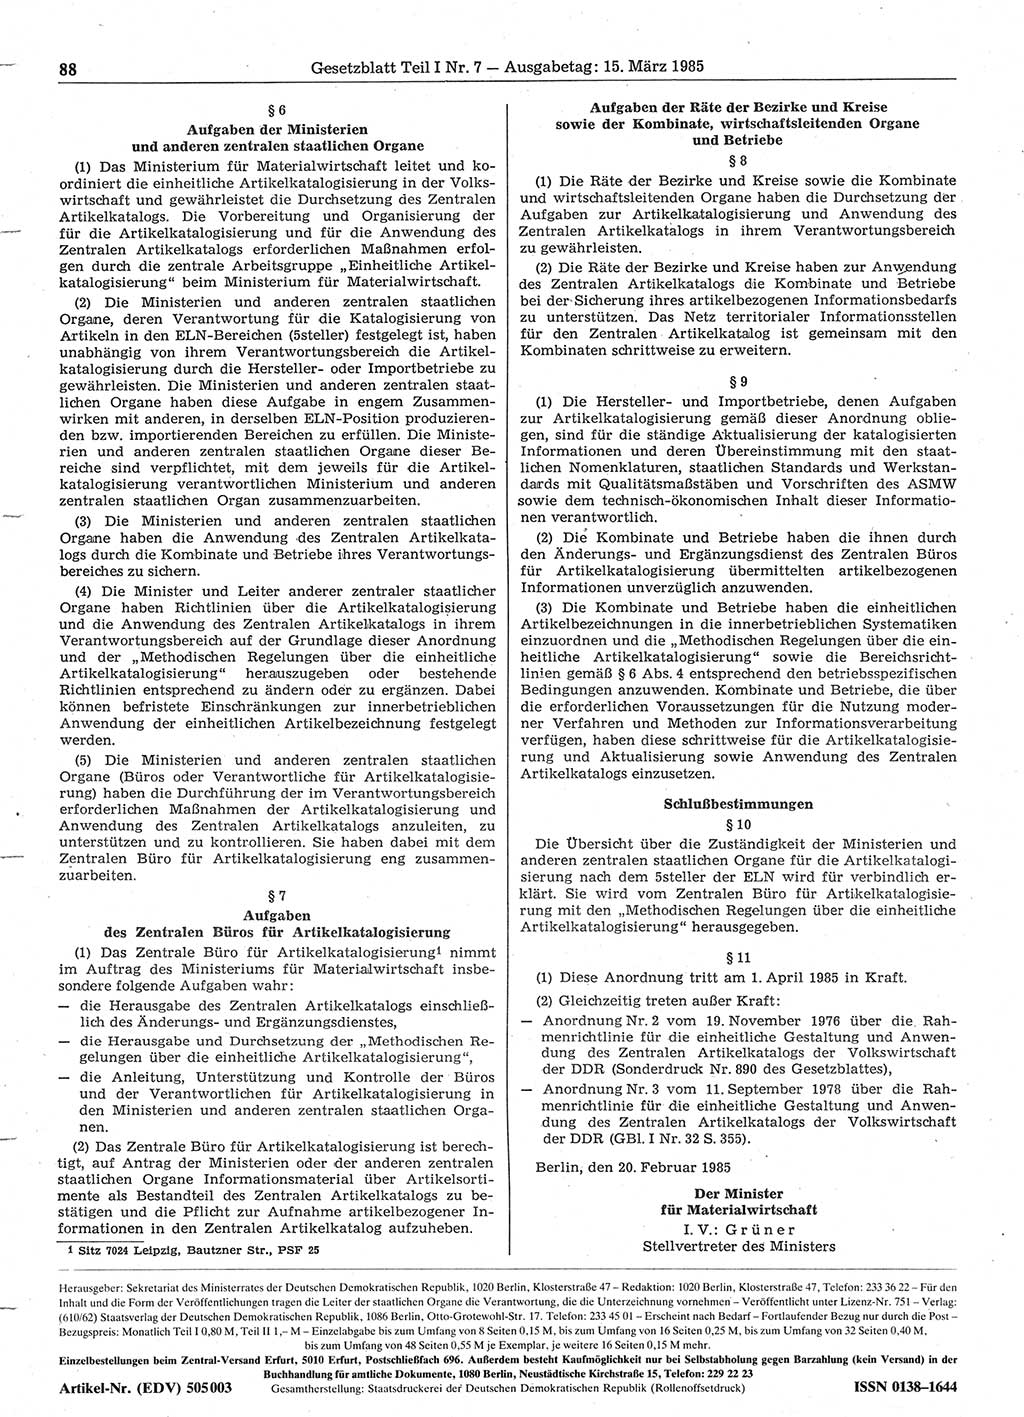 Gesetzblatt (GBl.) der Deutschen Demokratischen Republik (DDR) Teil Ⅰ 1985, Seite 88 (GBl. DDR Ⅰ 1985, S. 88)